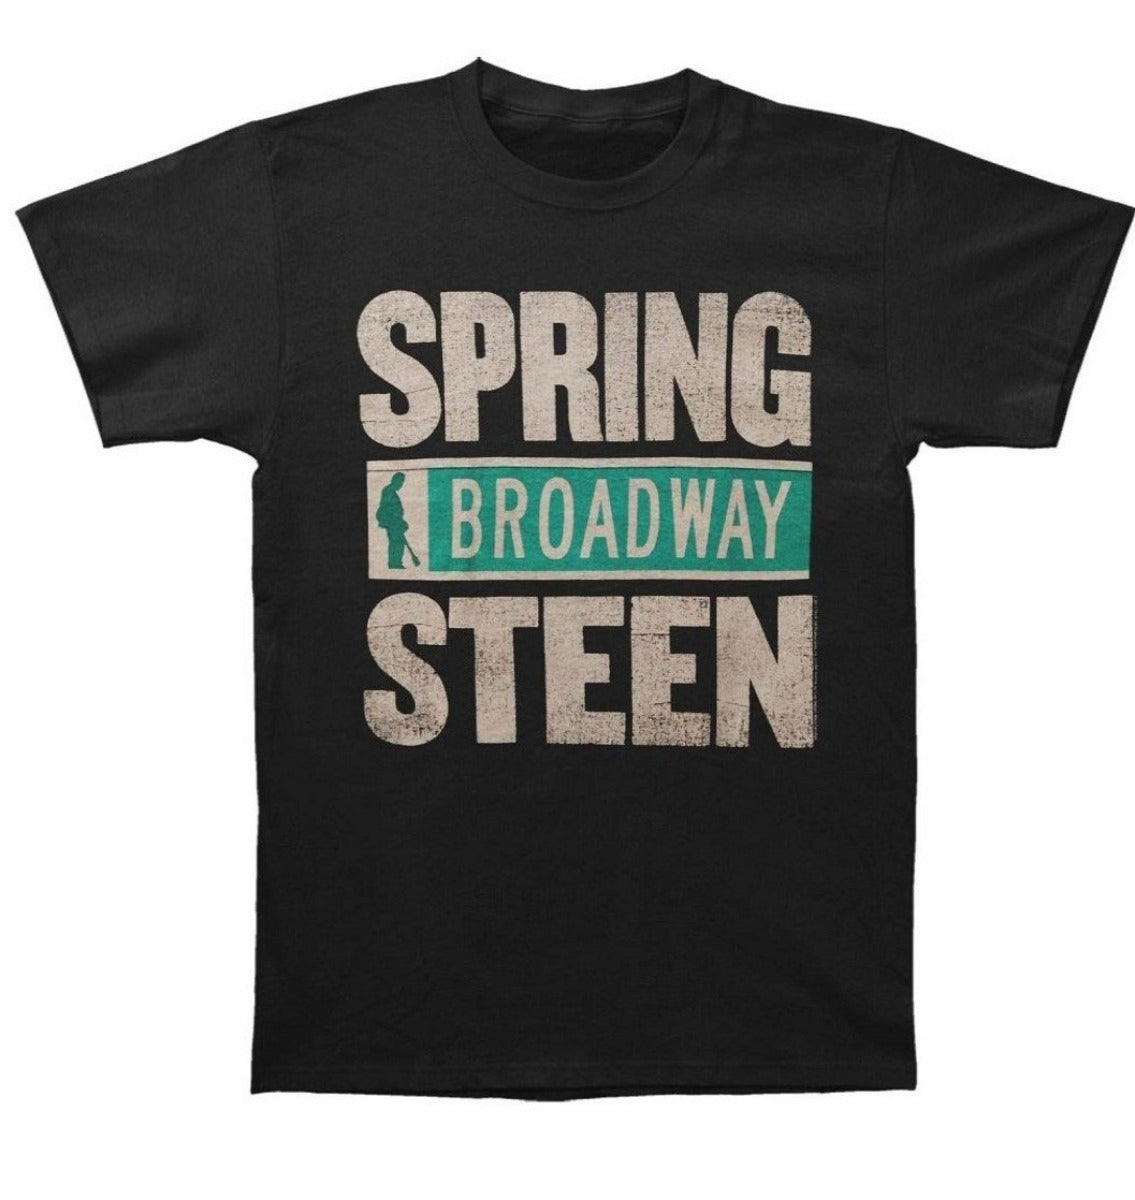 Bruce Springsteen - Spring Broadway Steen T-Shirt